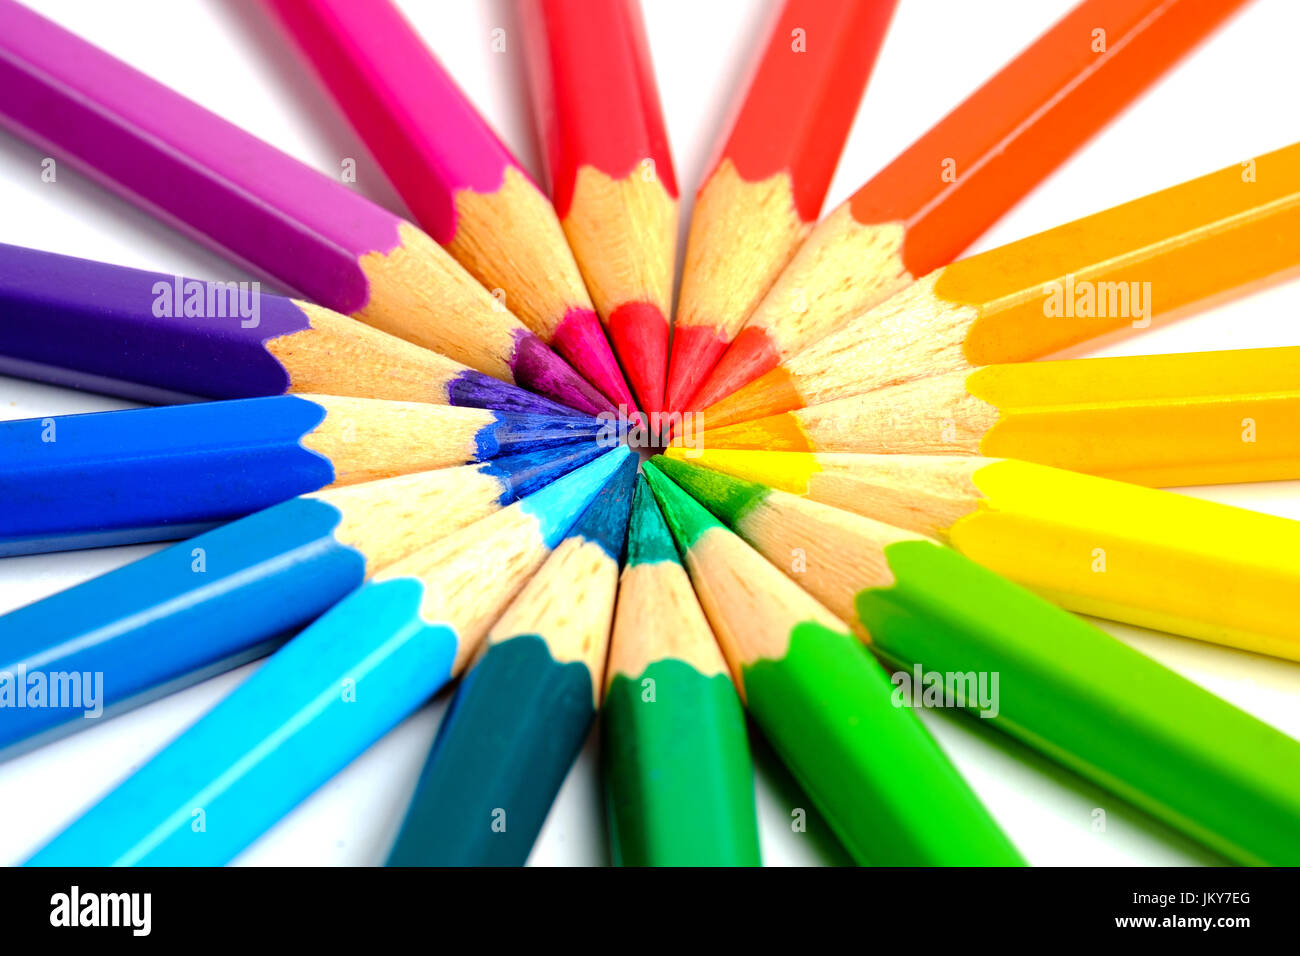 Circling coloring pencils Stock Photo